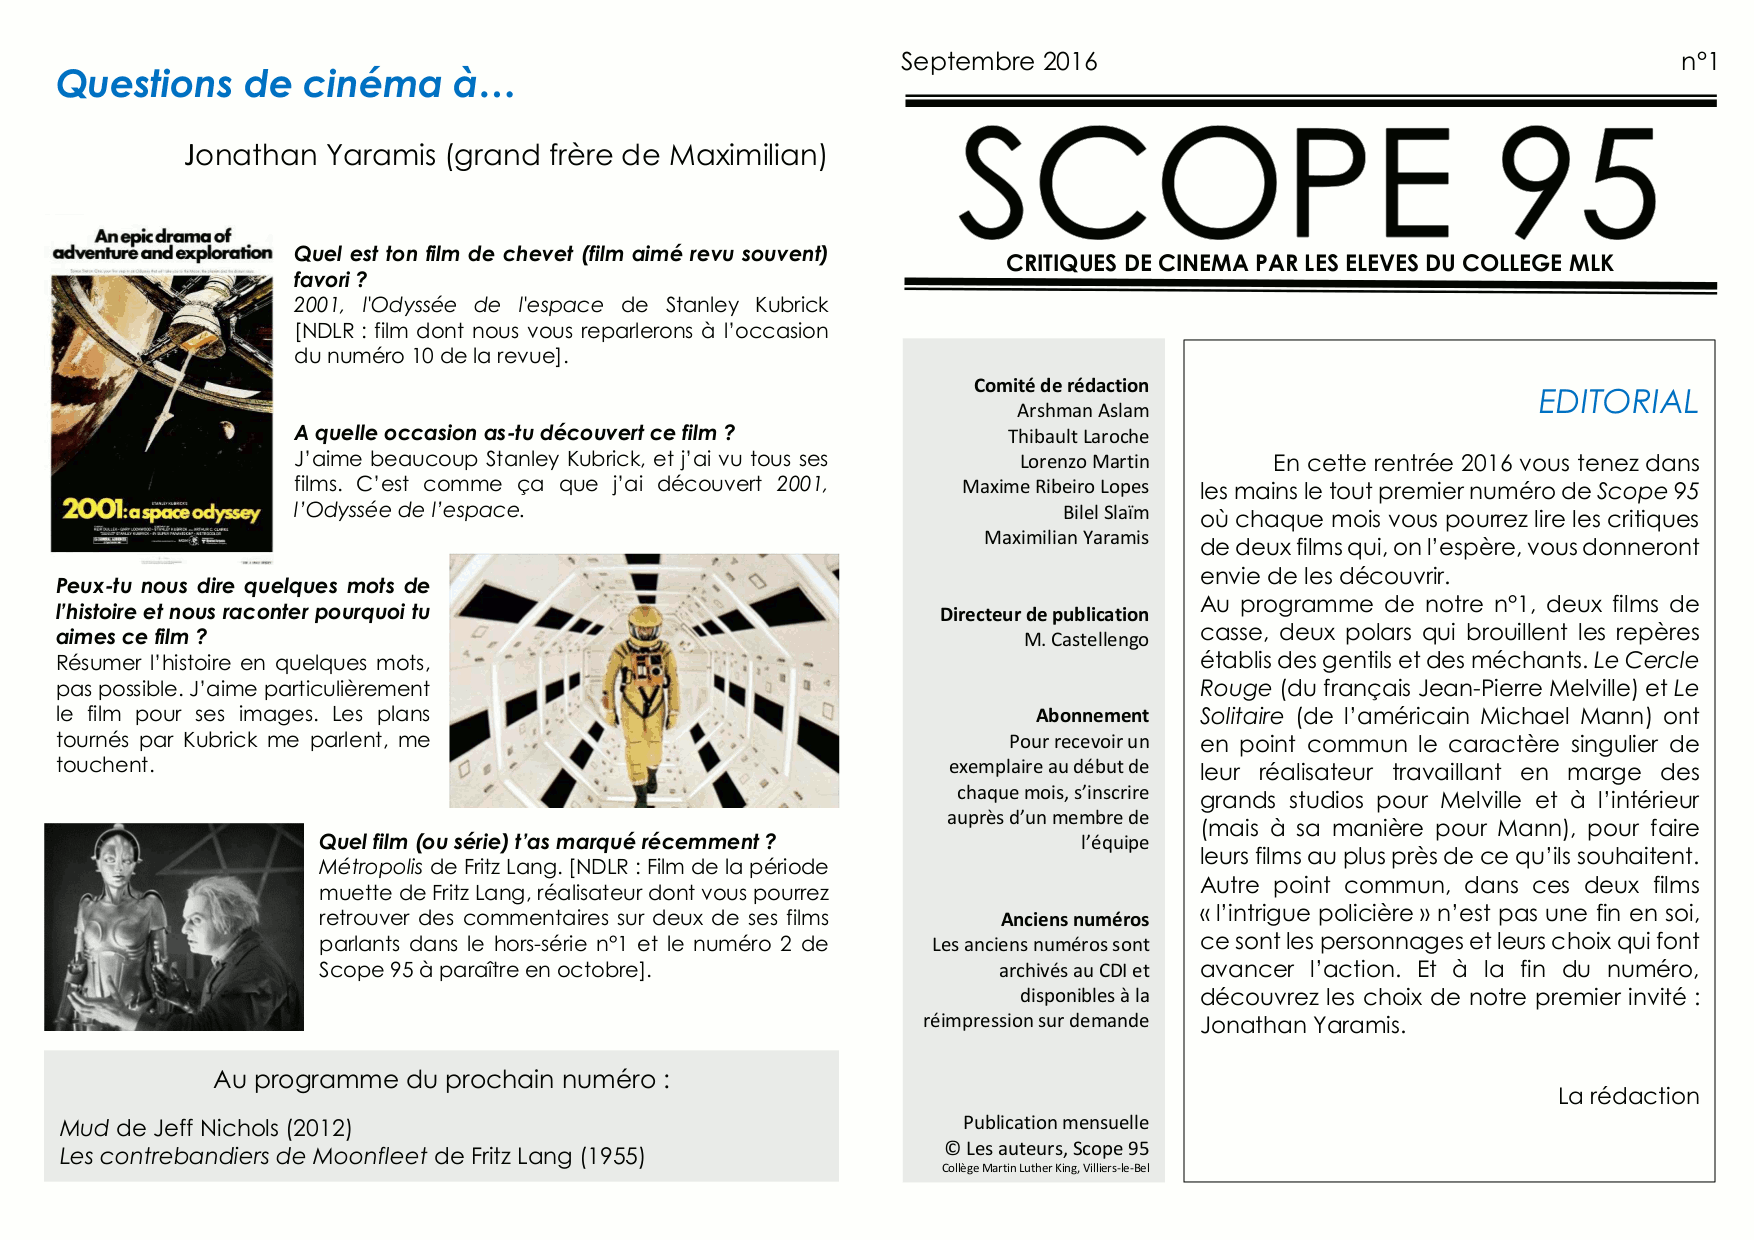 SCOPE 95 n°1 - 09.16